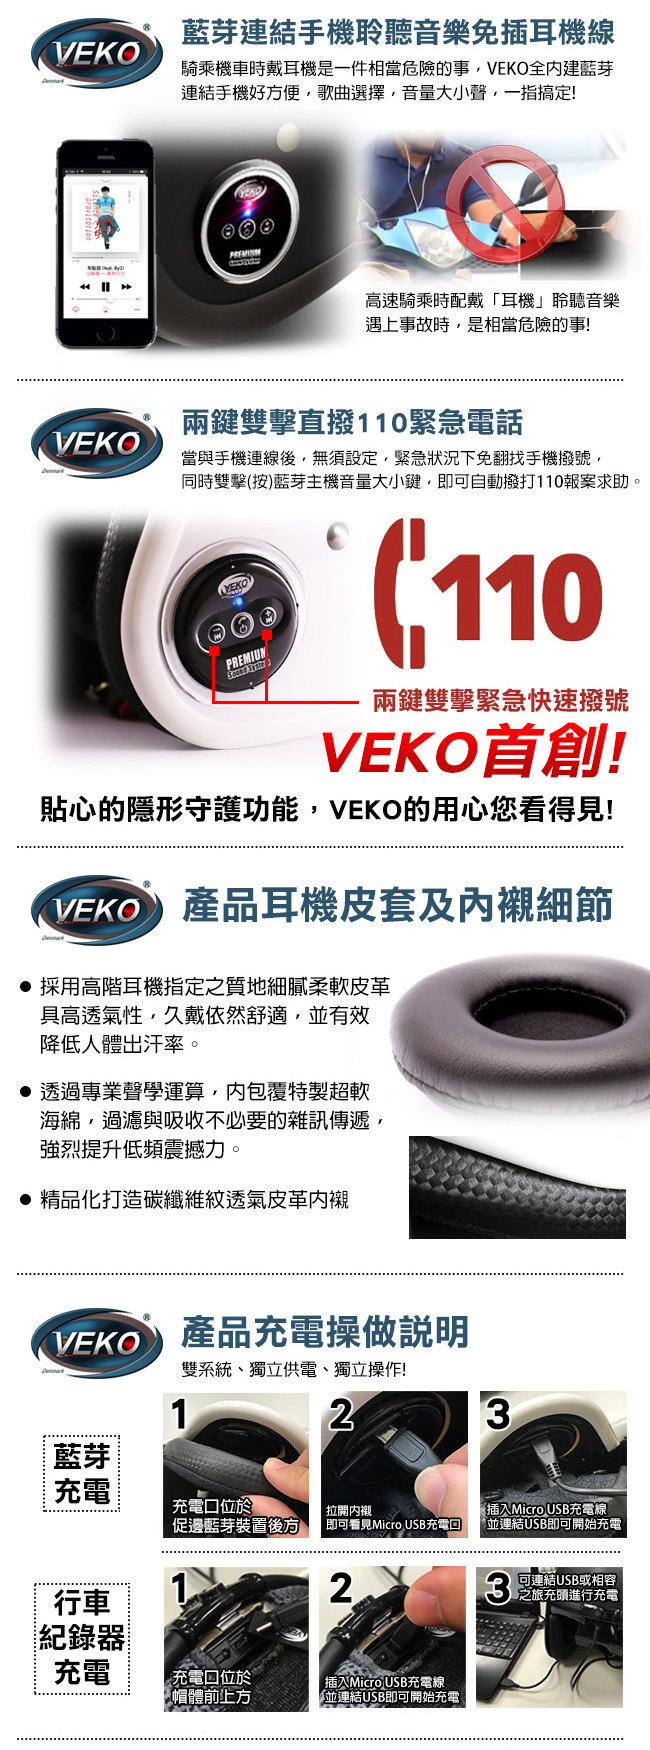 VEKO二代隱裝式1080i行車紀錄器+內建雙聲道藍芽通訊安全帽(珠光白)